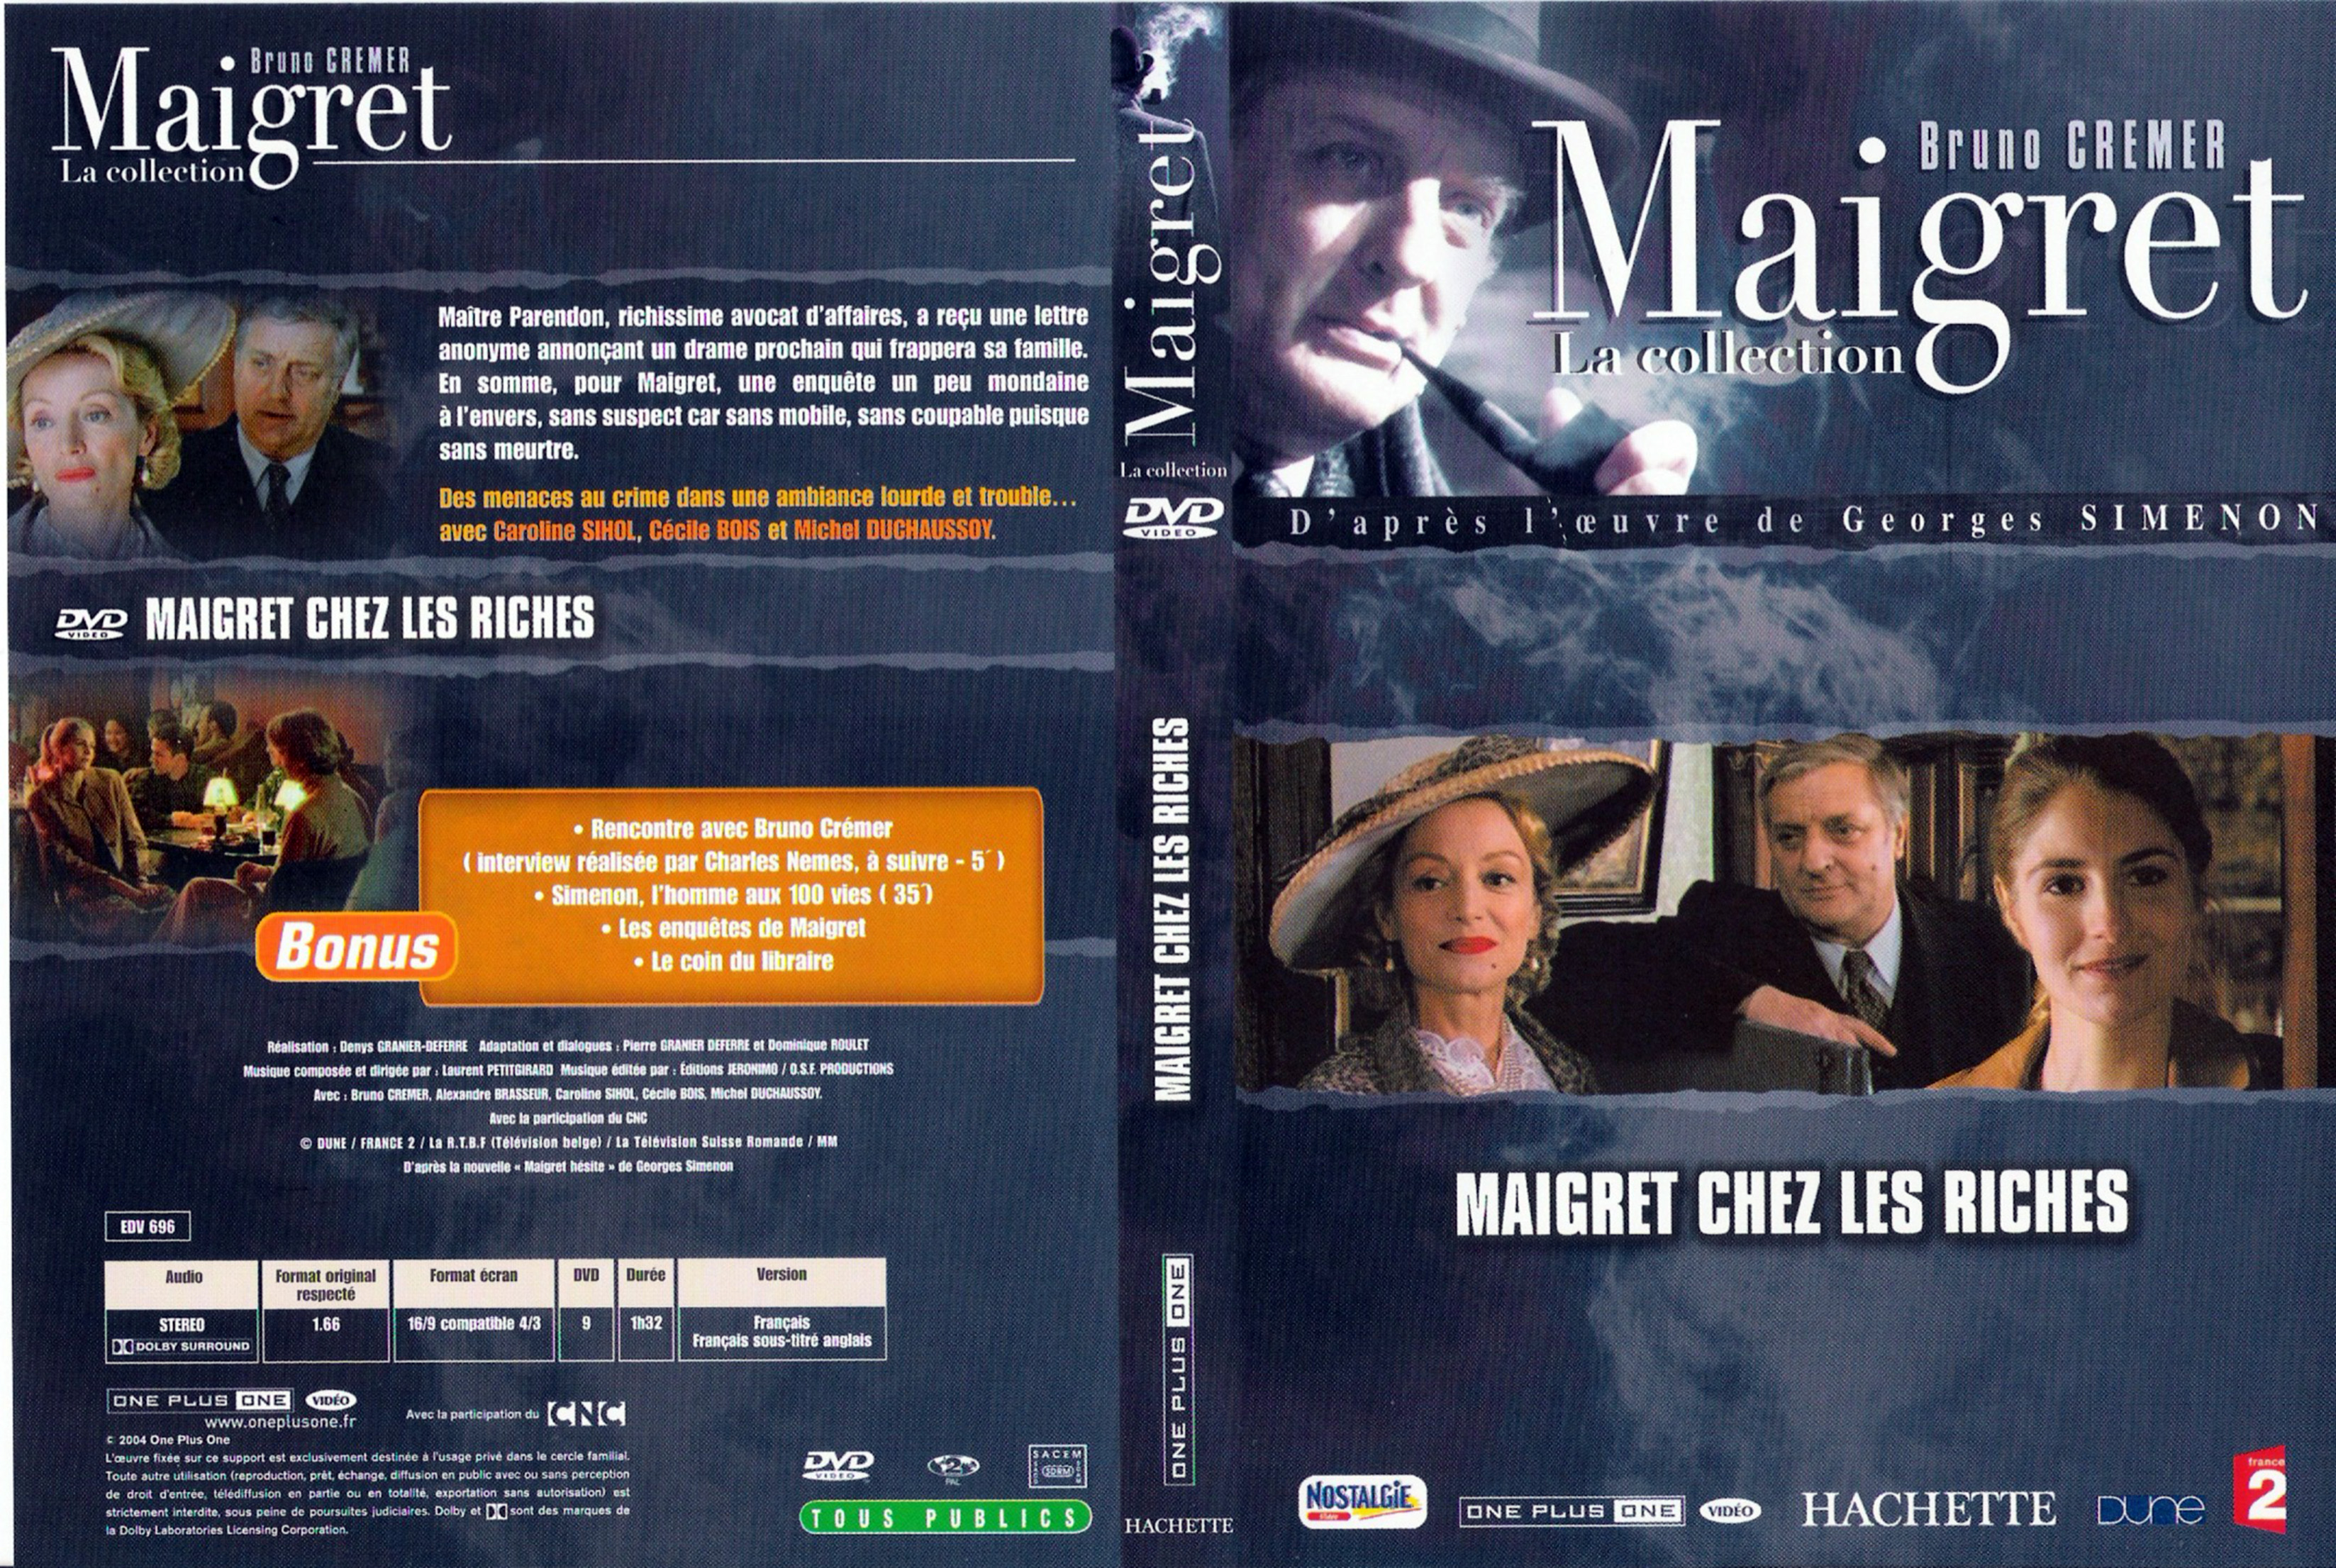 Jaquette DVD Maigret chez les riches (Bruno Cremer)